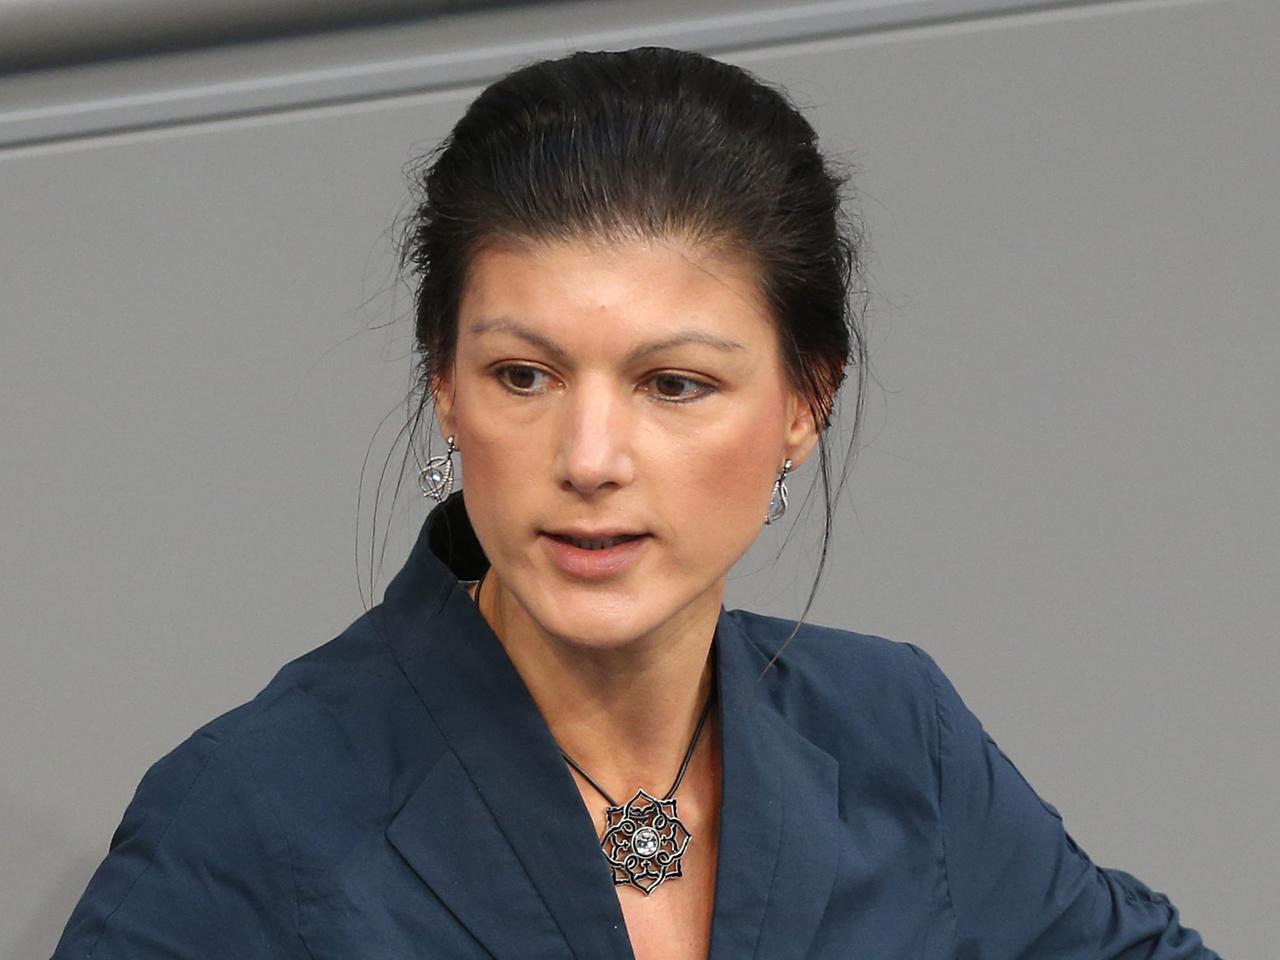 Großaufnahme von Sahra Wagenknecht während einer Rede im Bundestag im Februar 2013.